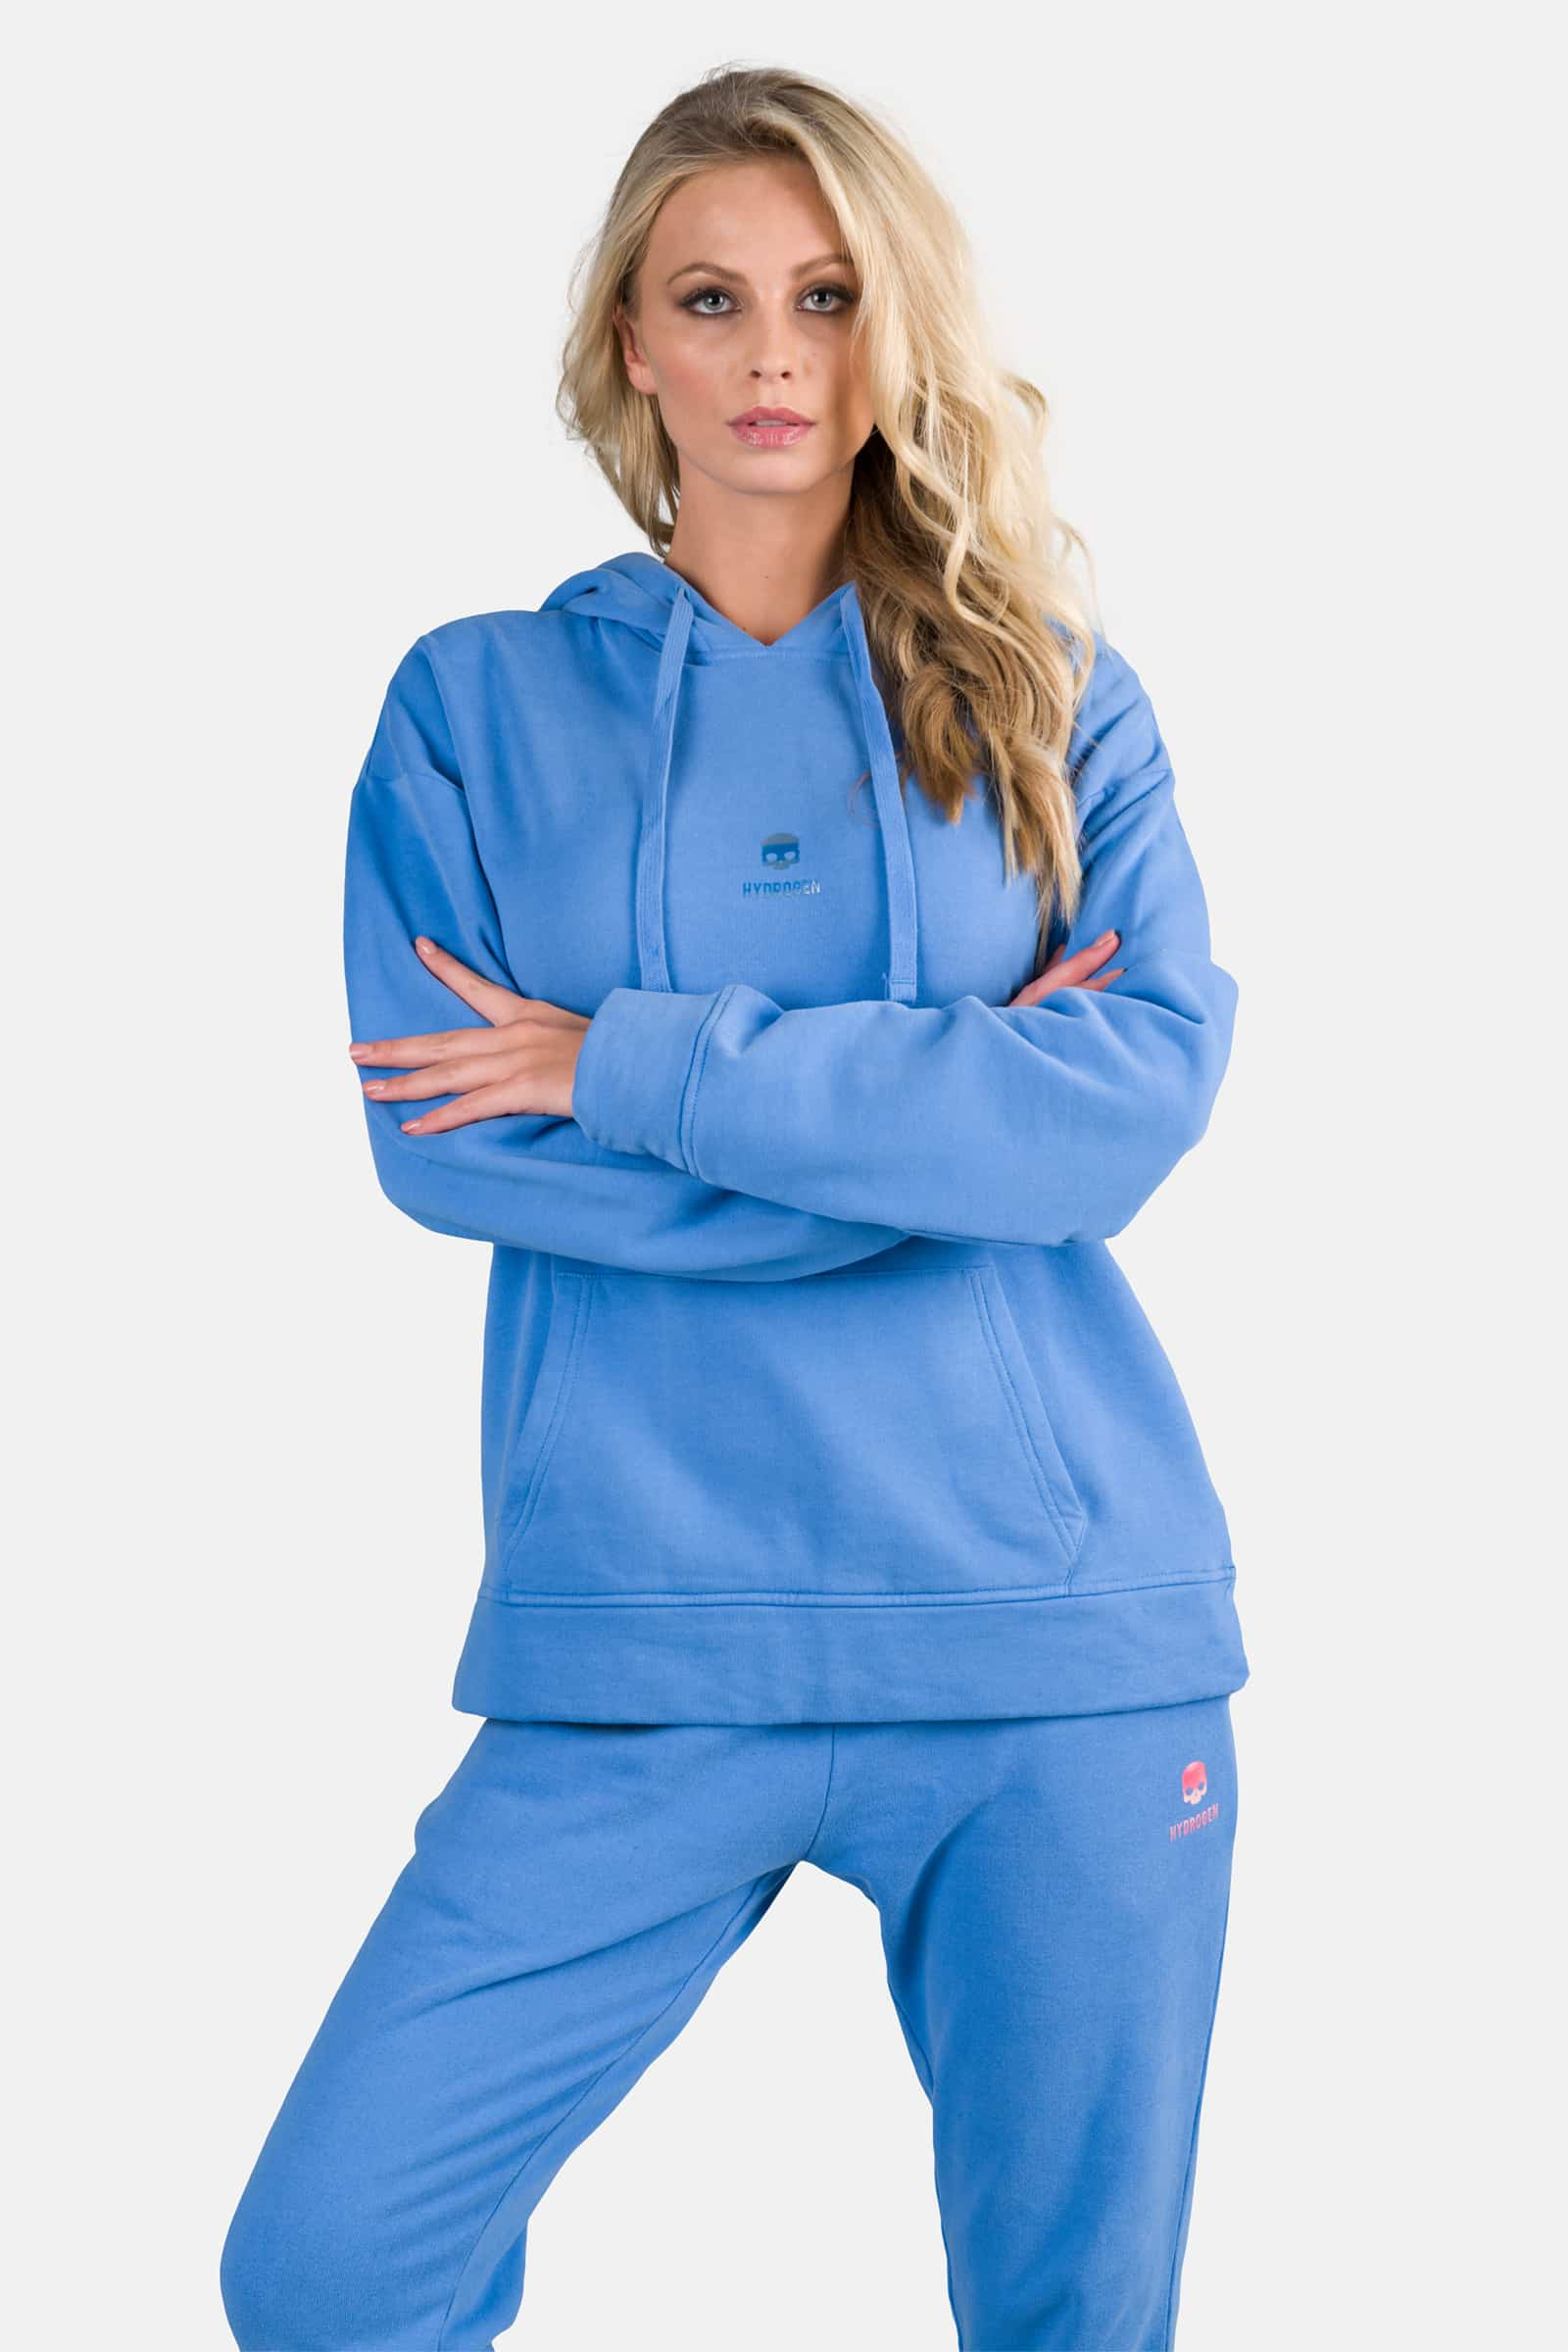 SKULL HOODIE - SKY BLUE - Hydrogen - Luxury Sportwear